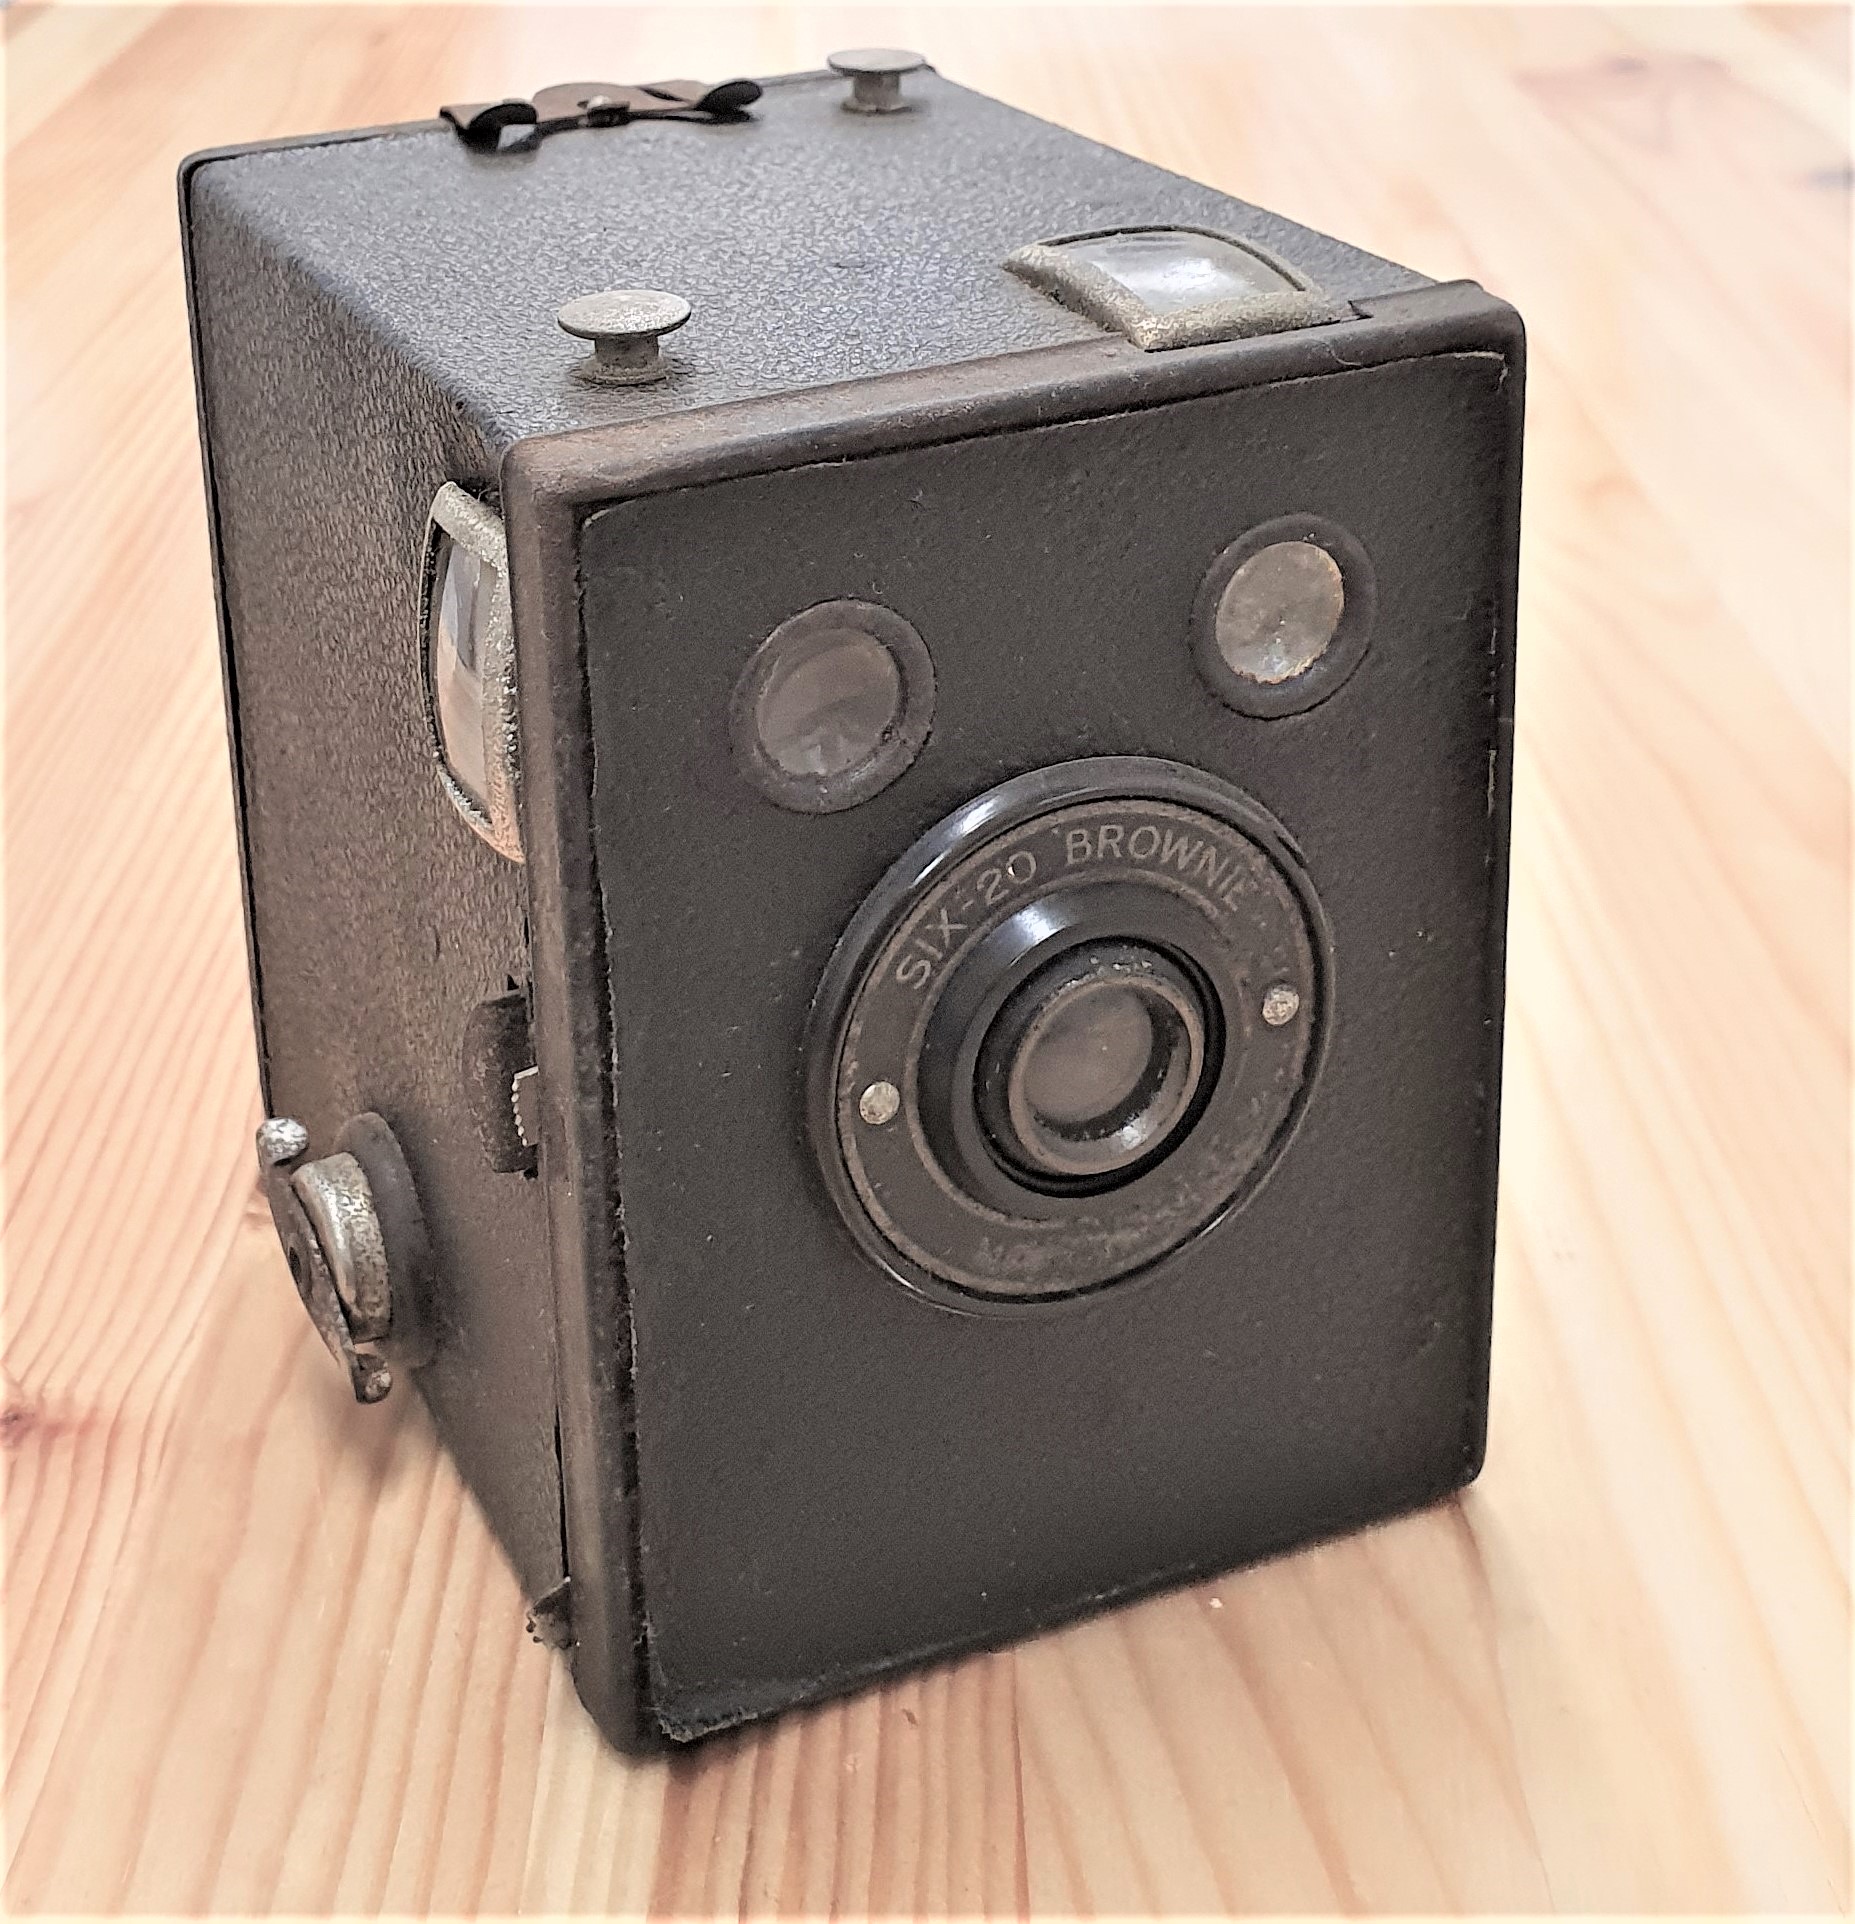 מצלמת קוביה קודק אנגליה  Kodak six 20 brownie